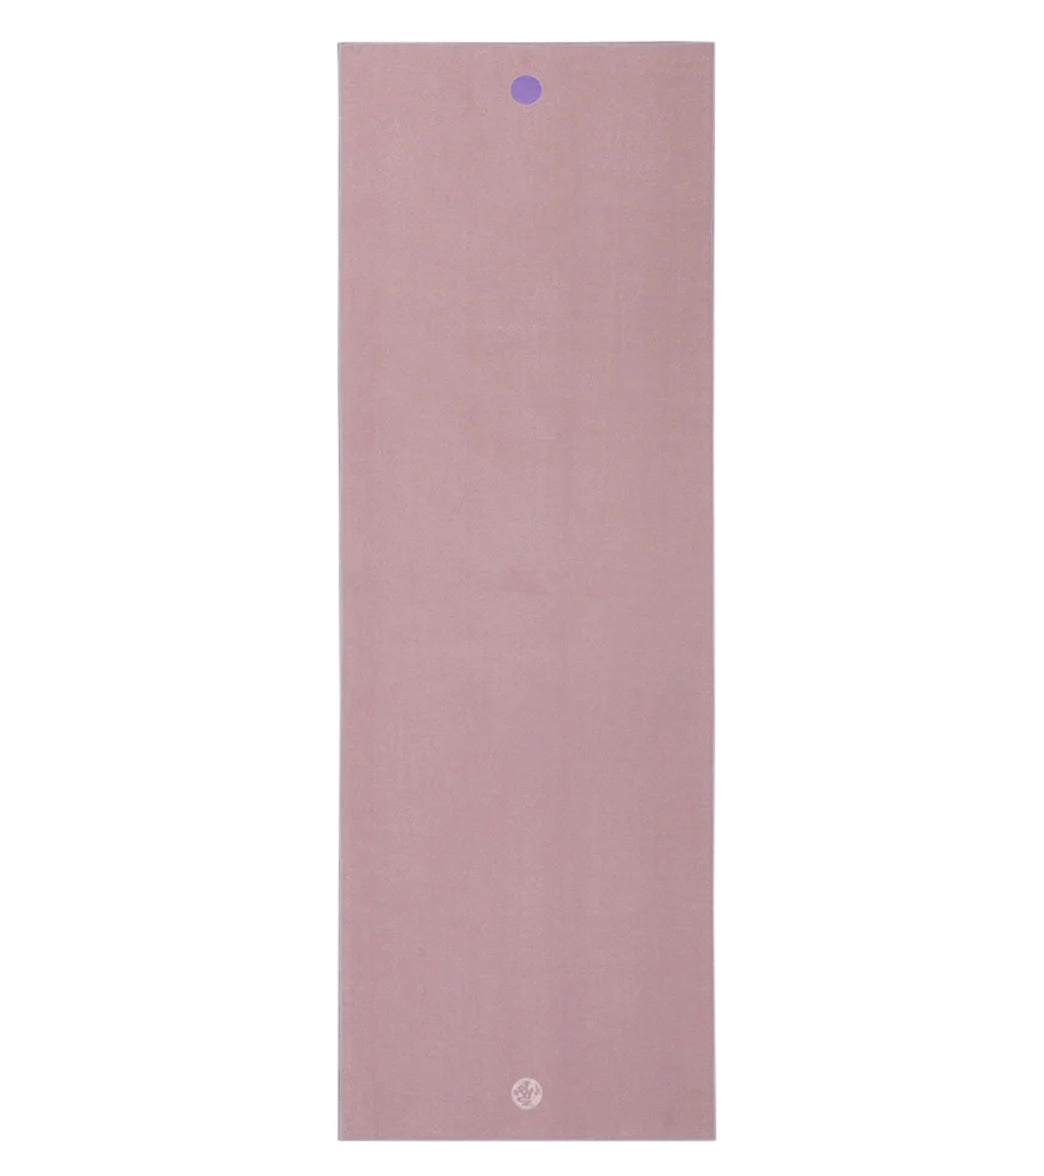 Manduka Yogitoes+ Repreve® Yoga Mat Towel, 71 at YogaOutlet.com